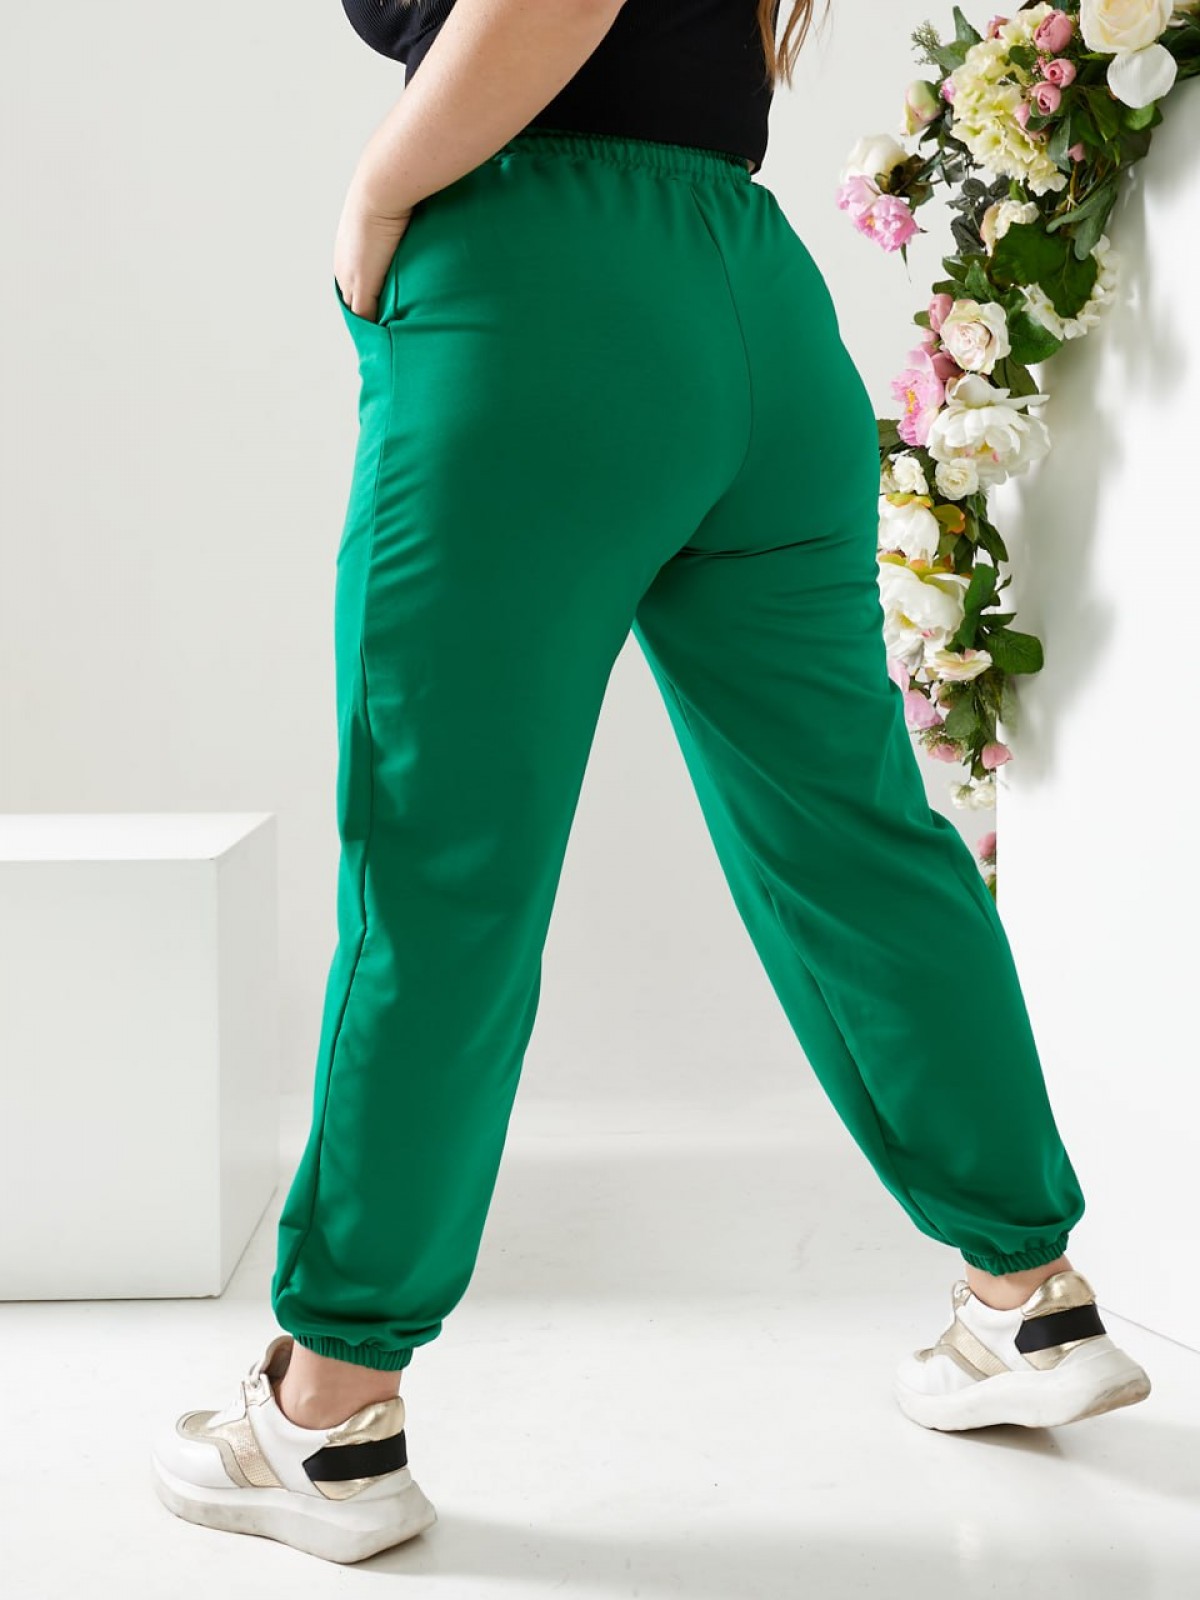 Жіночі спортивні штани двонитка зеленого кольору   р.52 406182